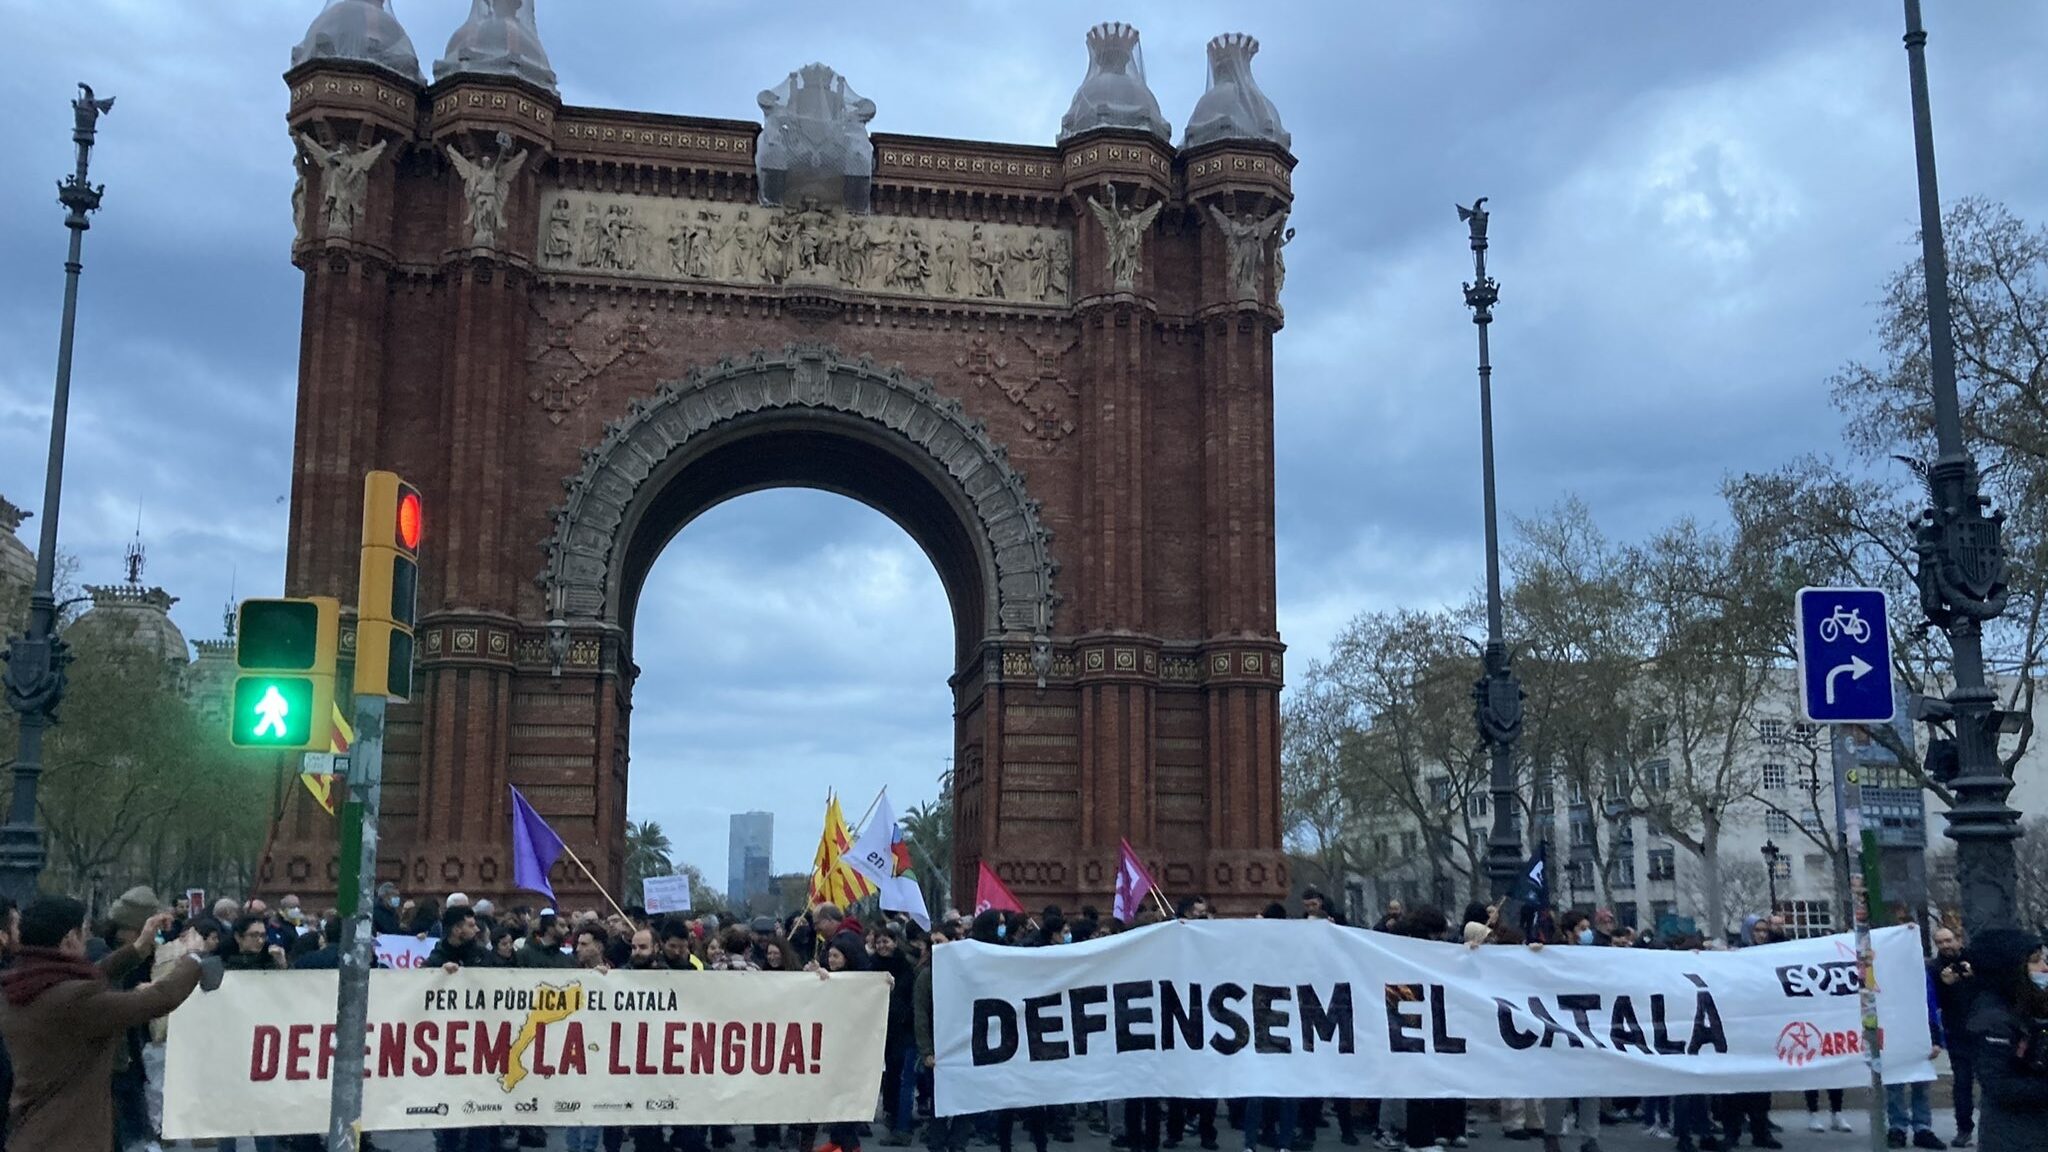 La mesa del trágala: El PSOE y sus tratos con ERC